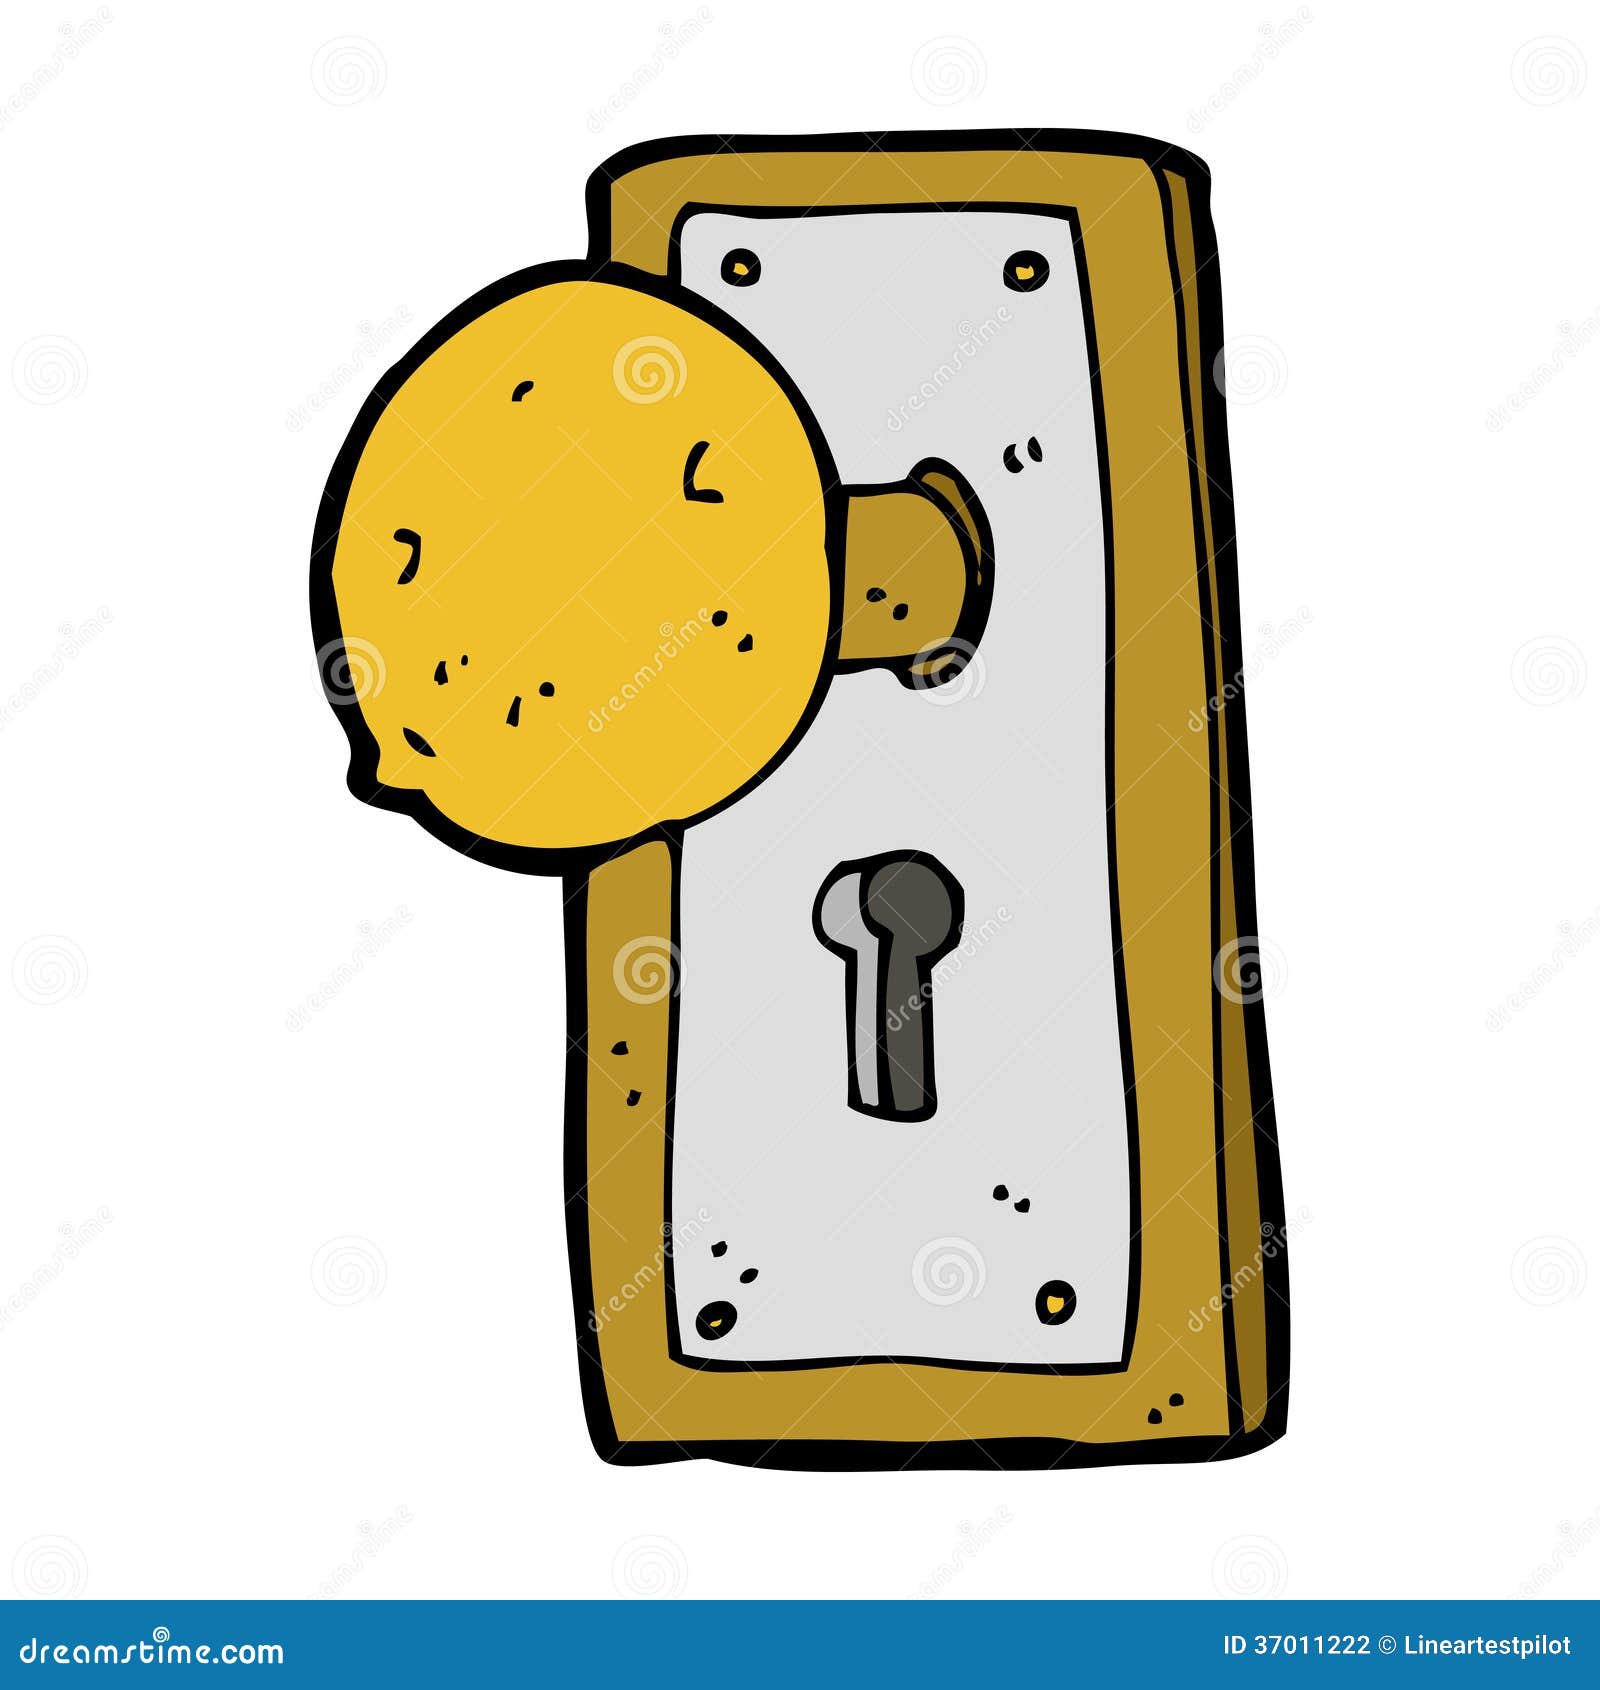 clipart door locks - photo #40